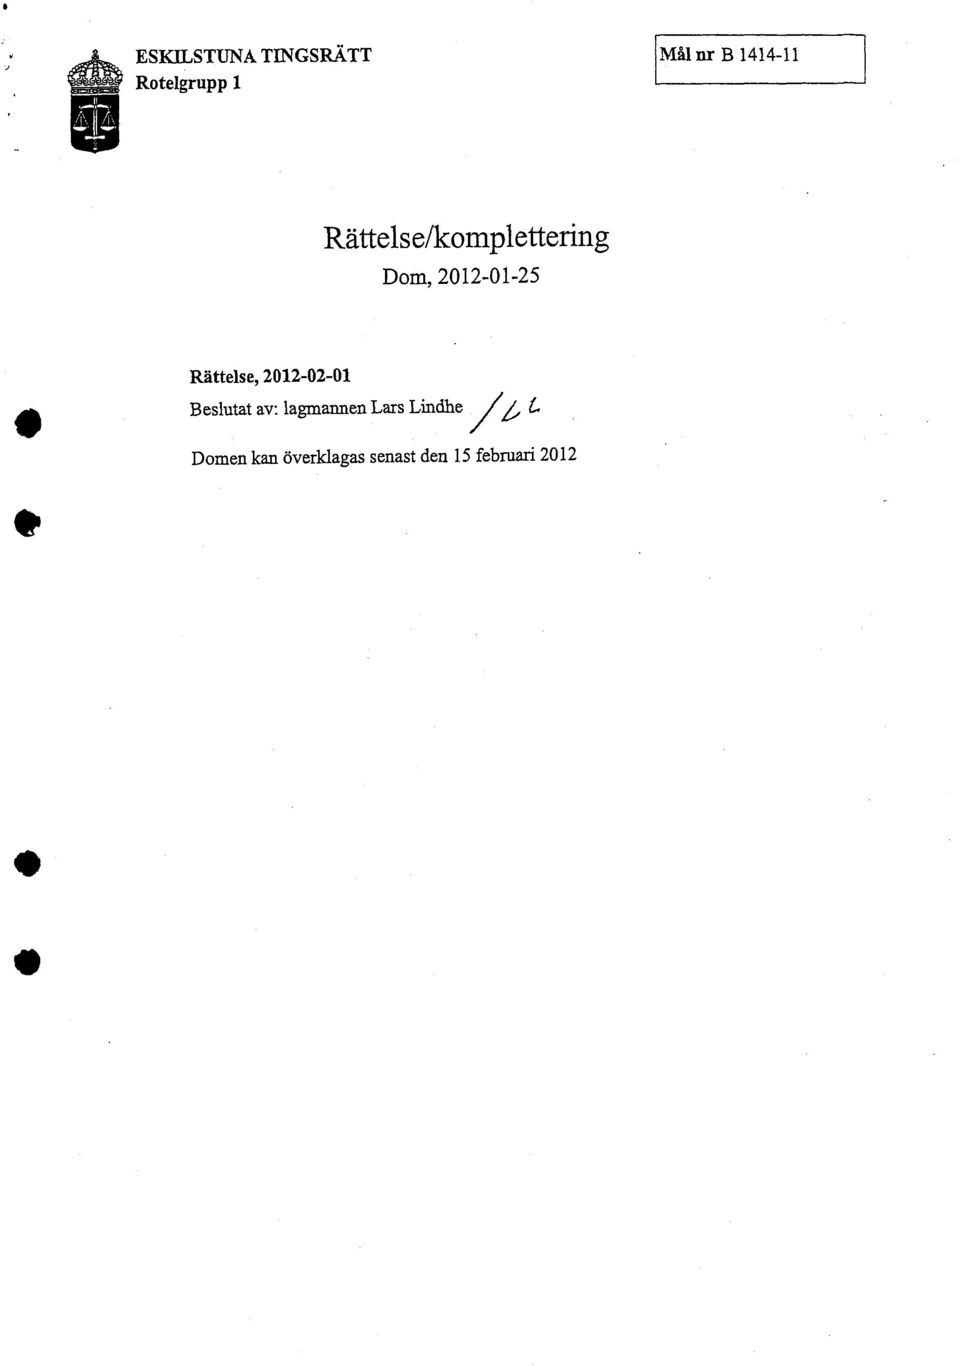 Rättelse, 2012-02-01 Beslutat av: lagmannen Lars